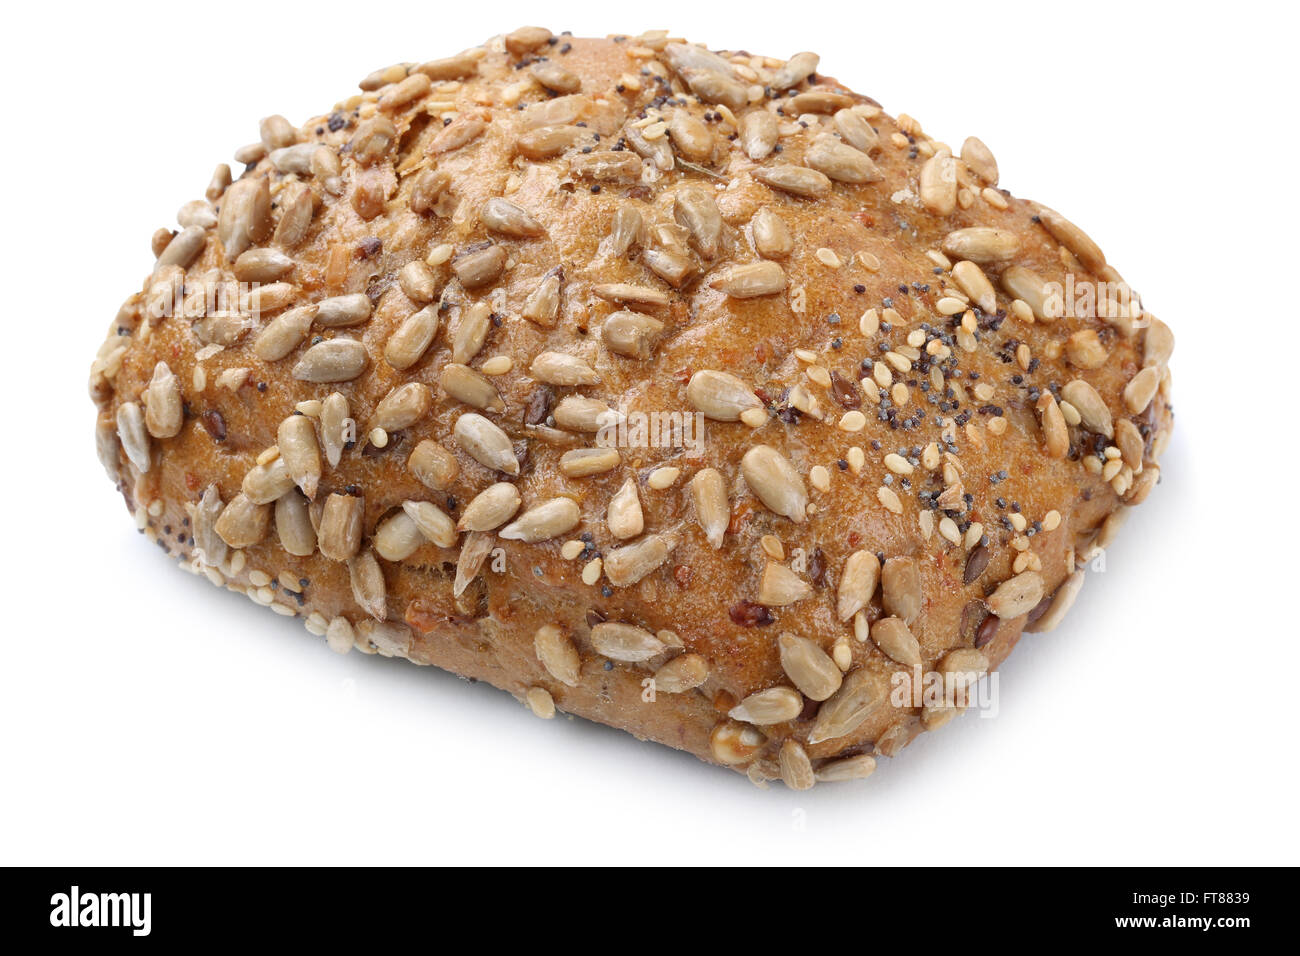 Les grains entiers pain rouleau pour le petit-déjeuner isolé sur un fond blanc bakery Banque D'Images